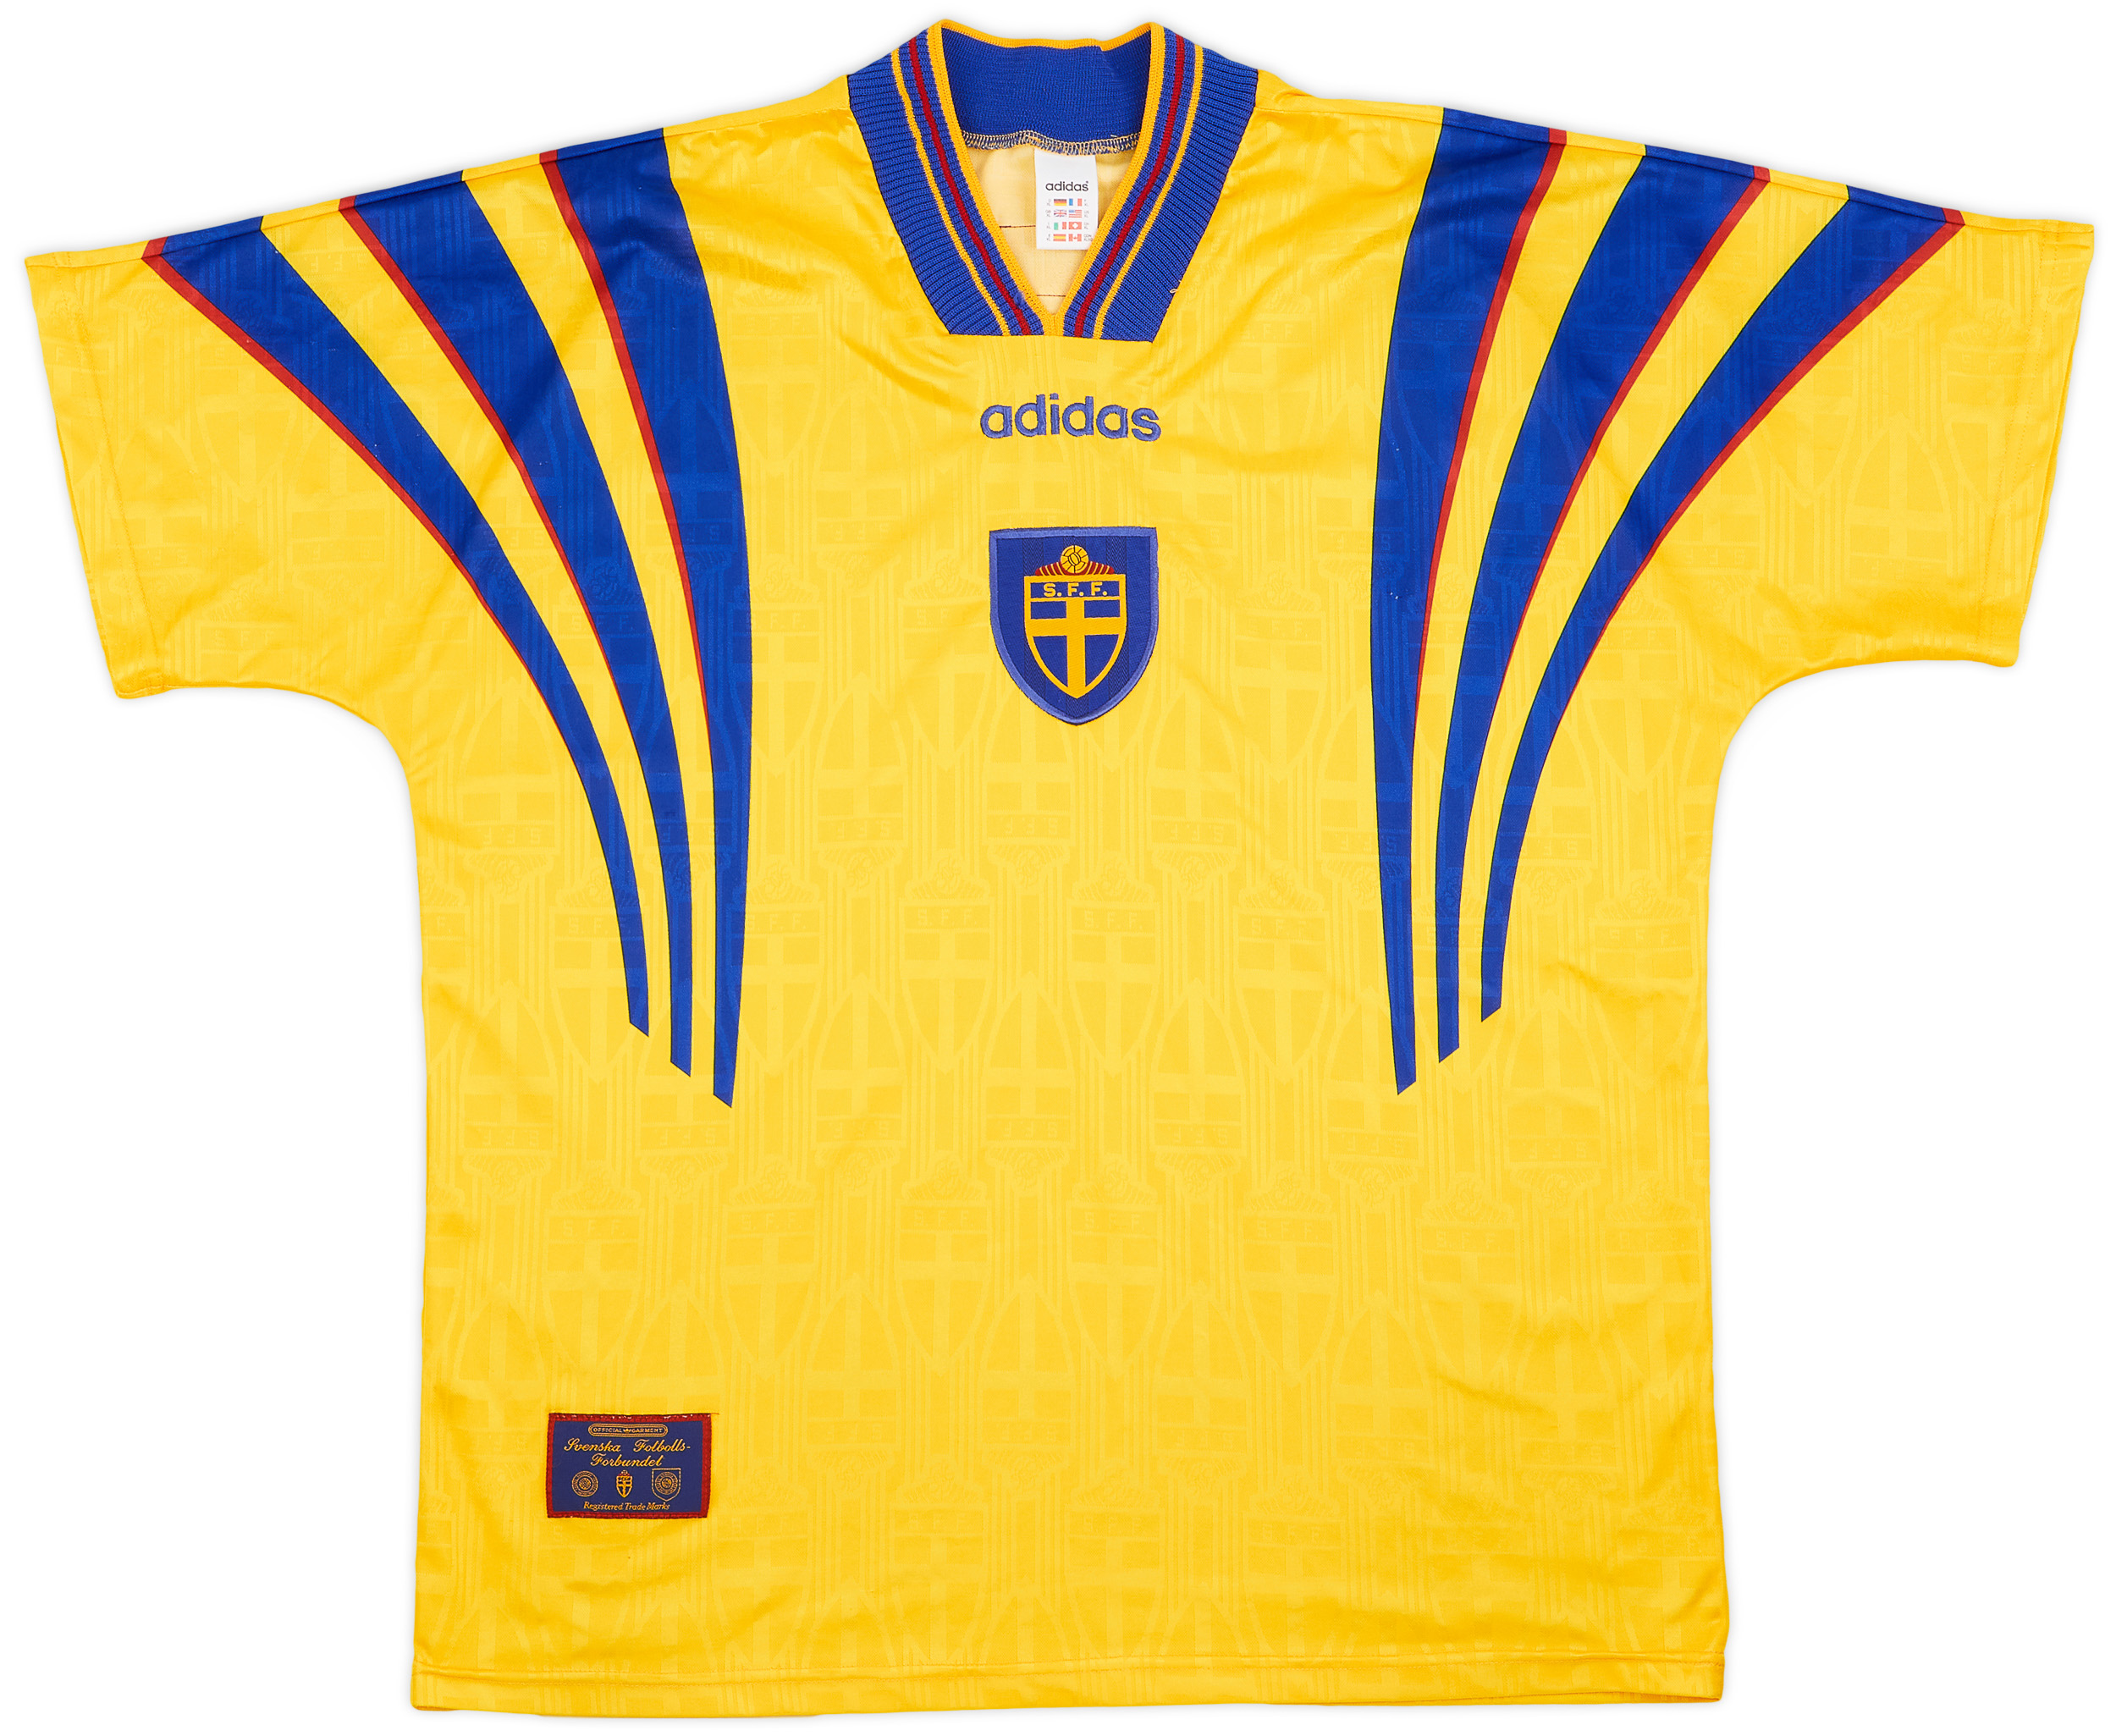 1997 Sweden Home Shirt - 8/10 - ()